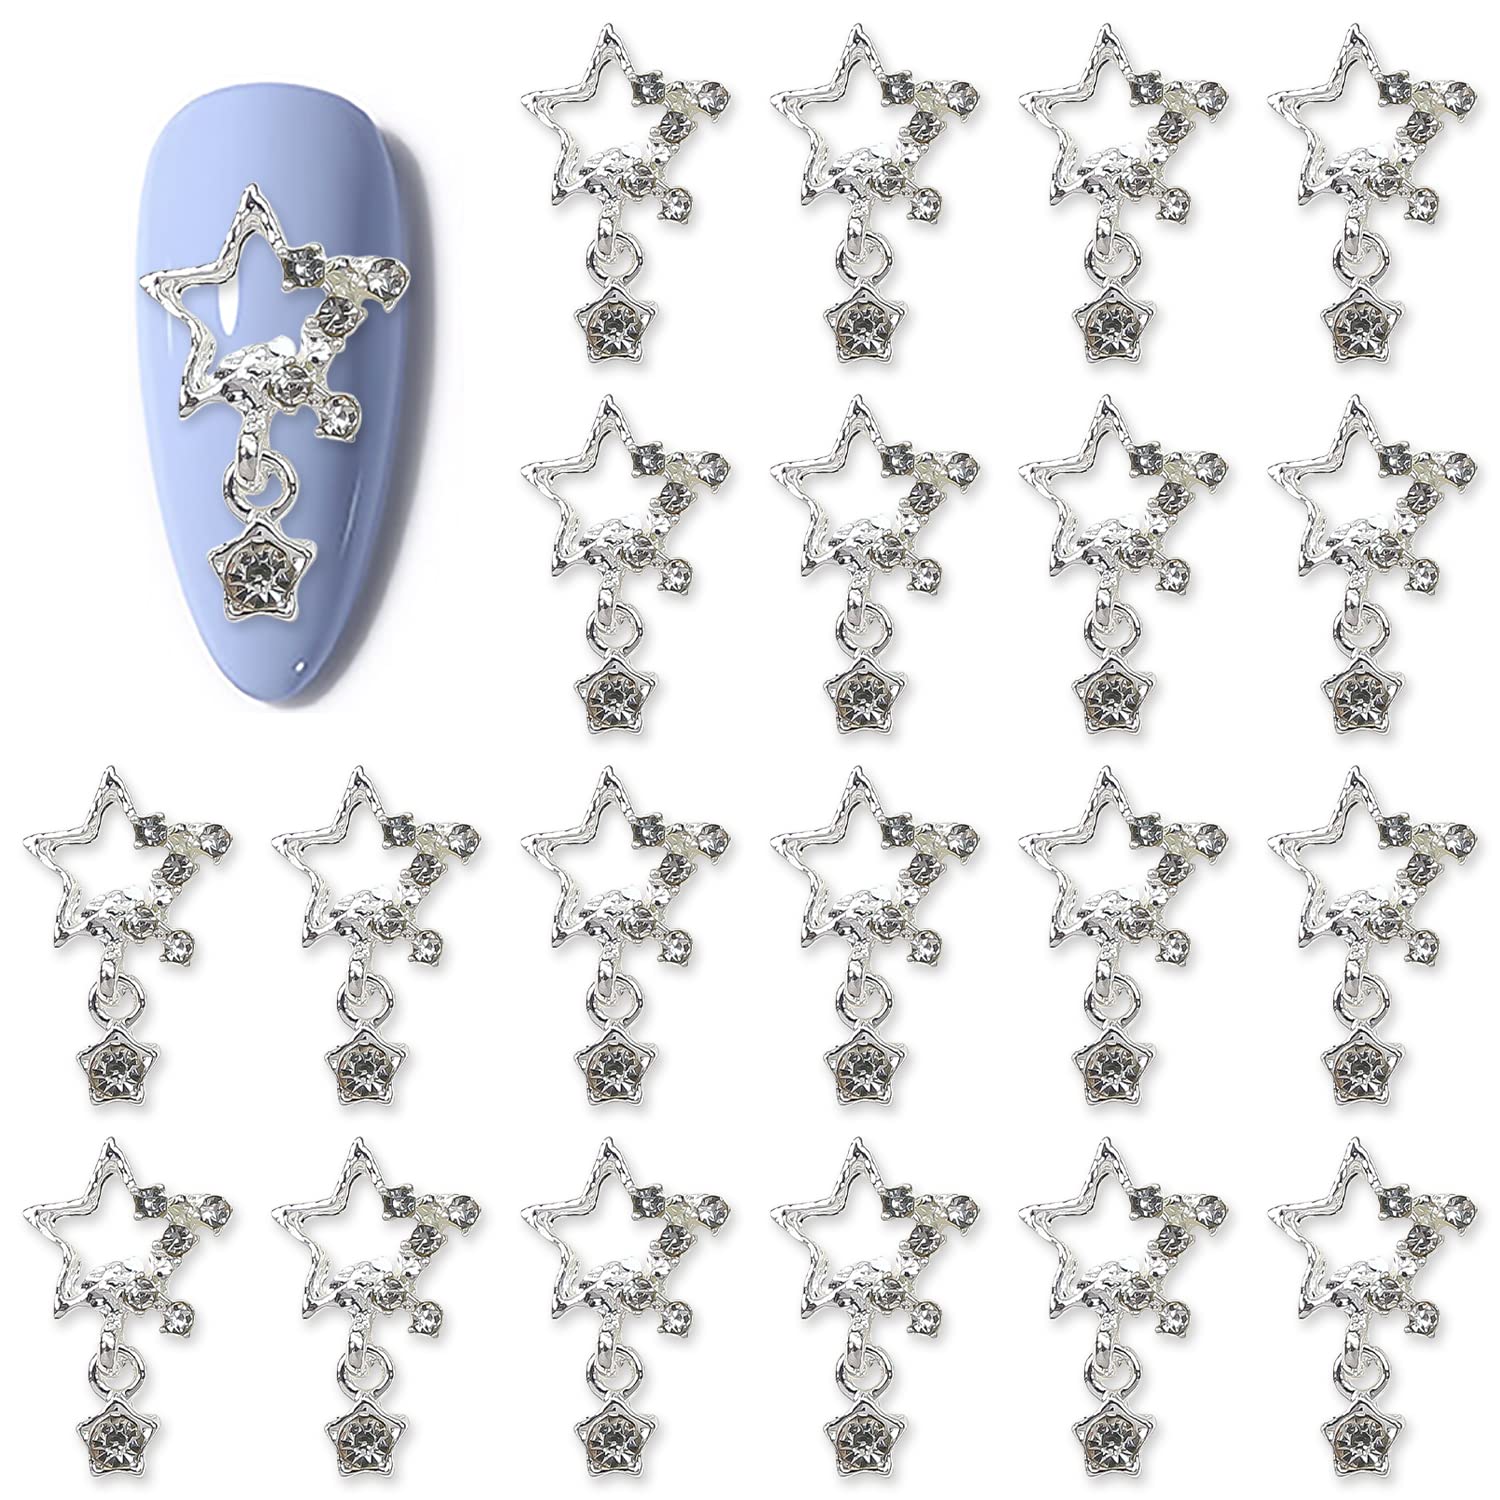 WOKOTO 30 Pcs Dangle Stars Nail Charms Silver Nail Charms for Nail Art Jewels  Nail Rhinestones and Charms for Nails Designs Charms 3D Stars Charms for  Acrylic Nails Stars Nail Art Gems